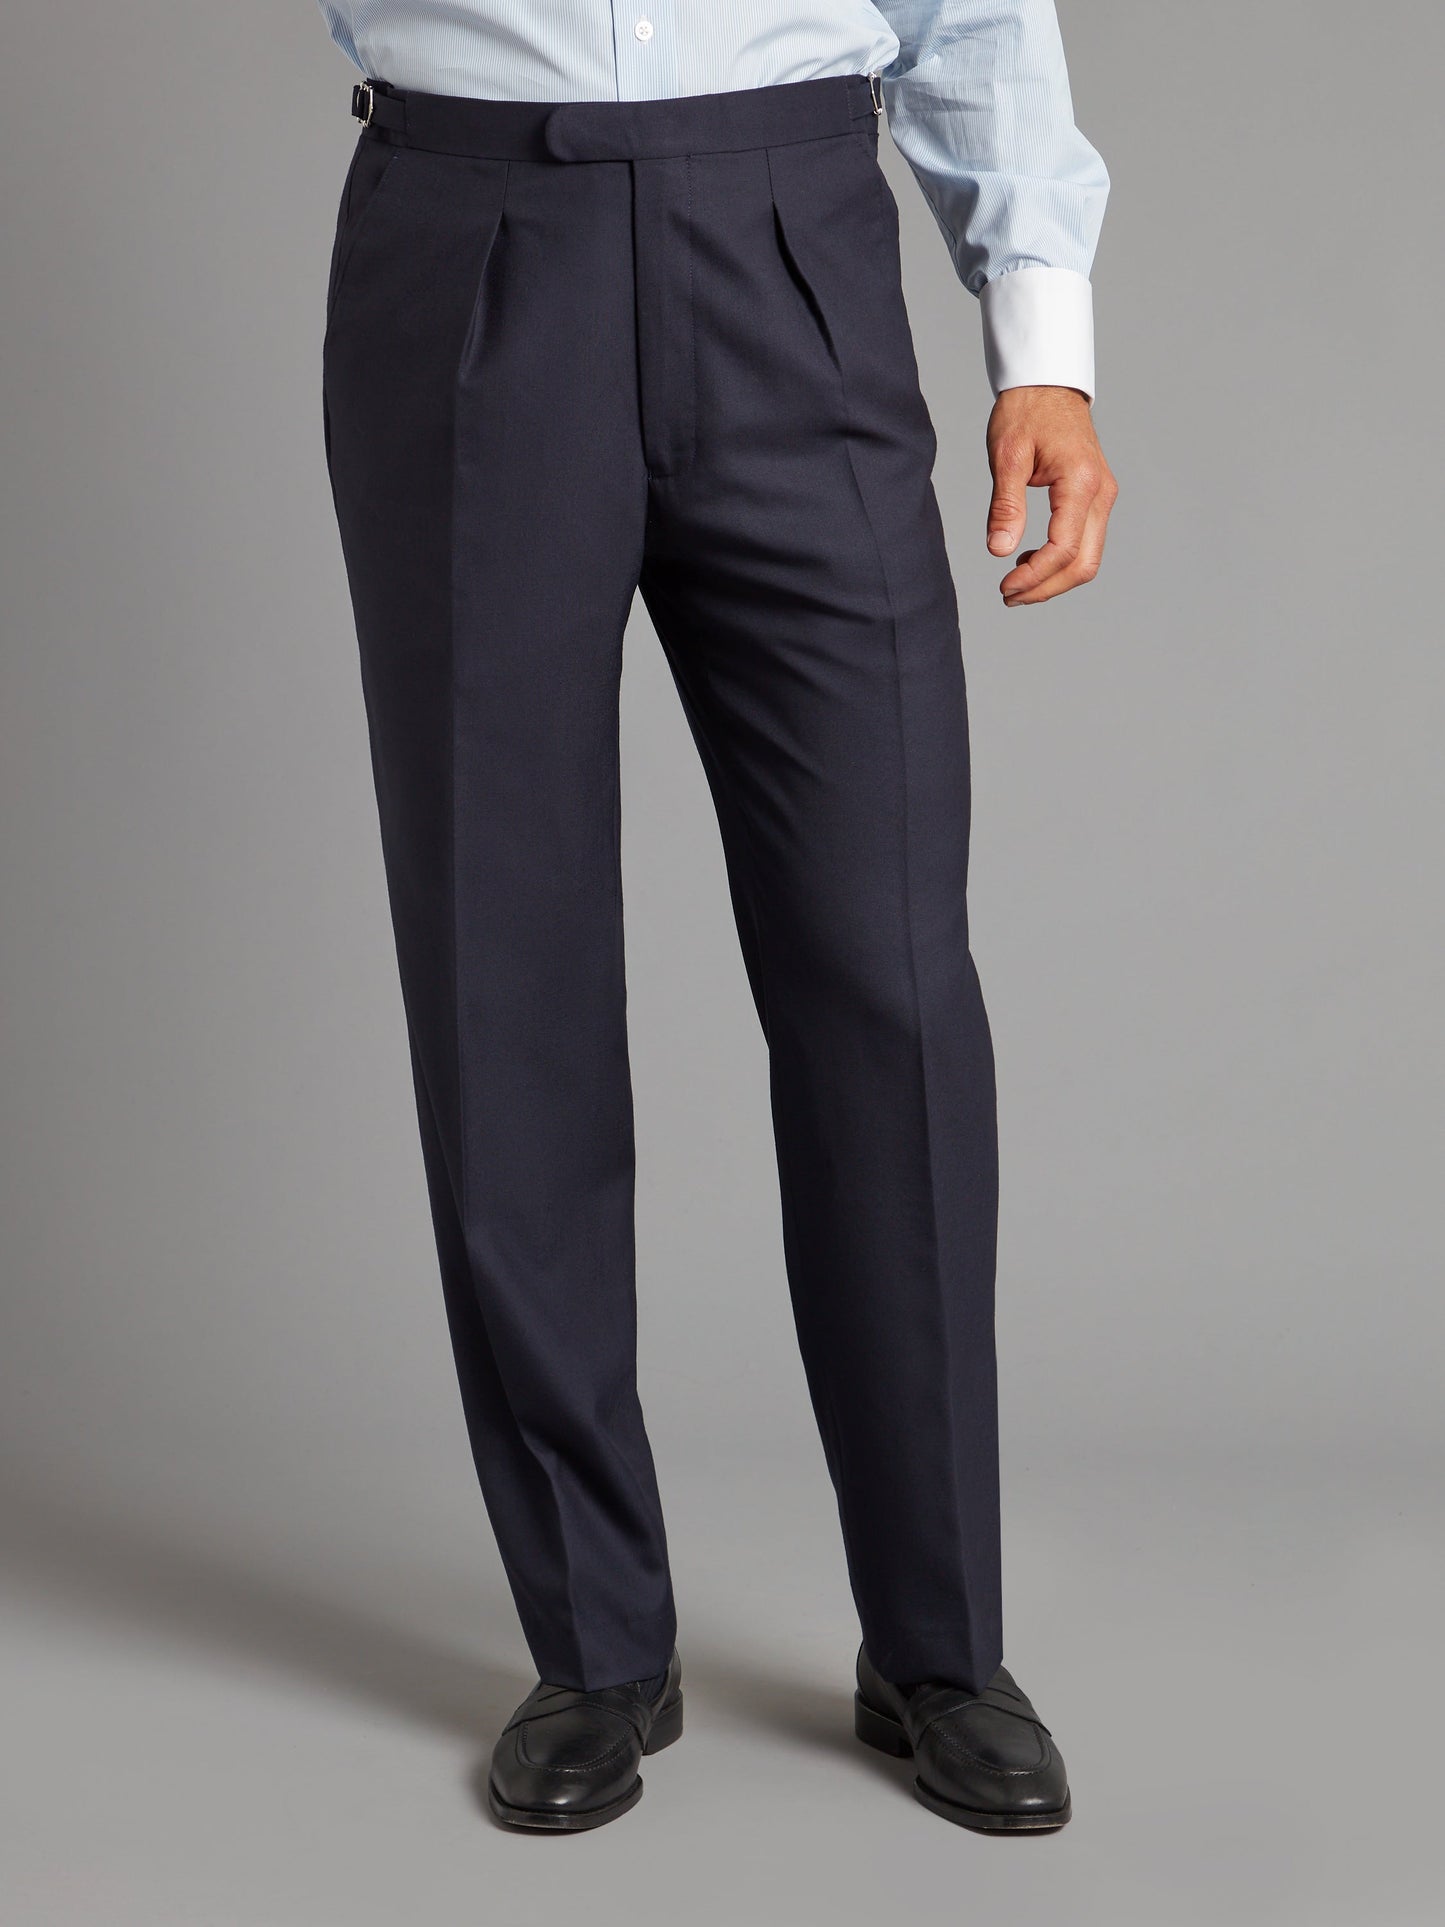 Lightweight Eaton Suit - Plain Navy